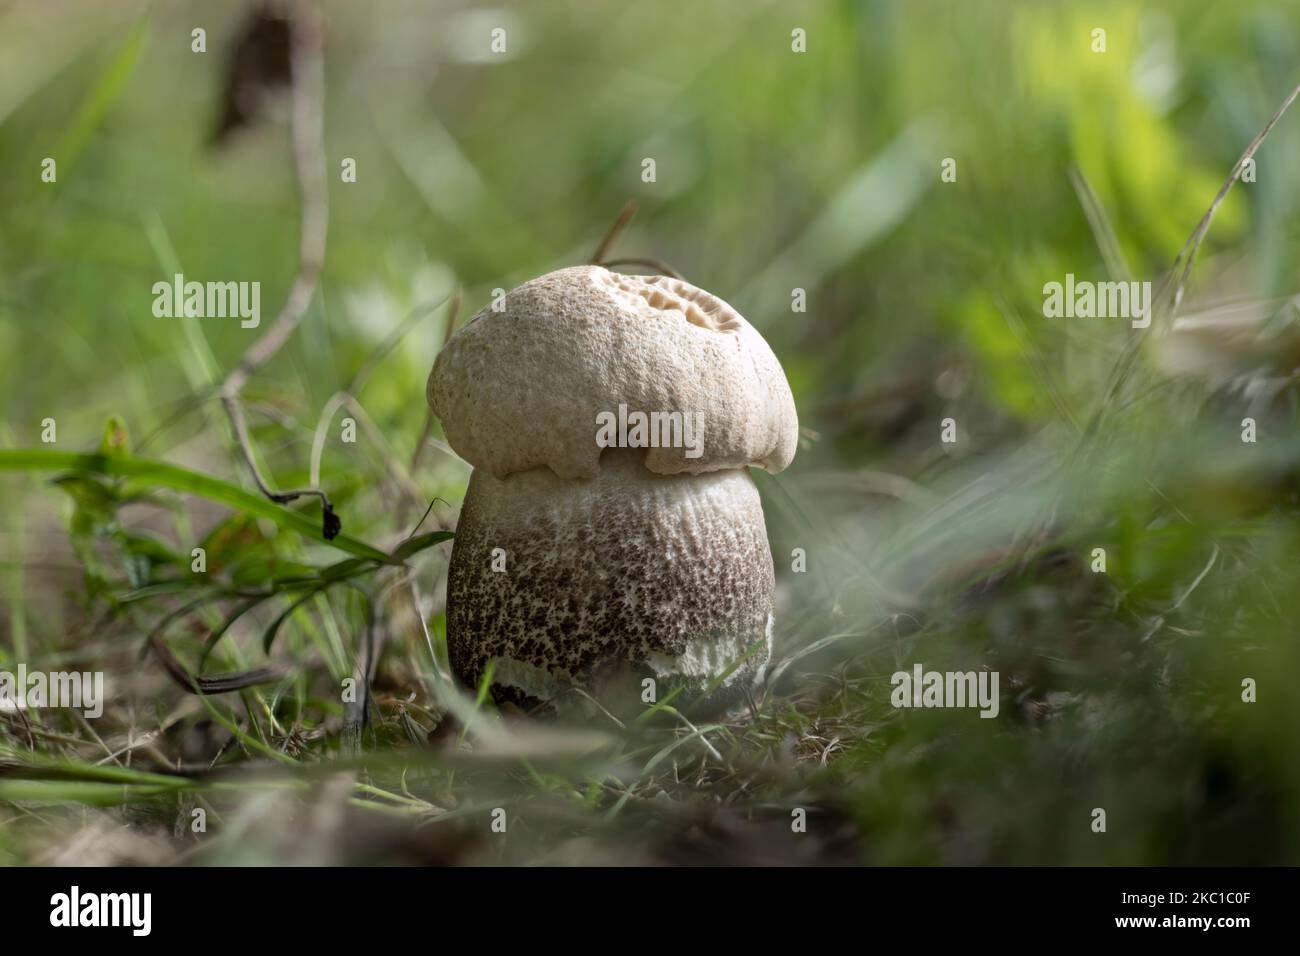 A young Leccinum duriusculum mushroom under aspen trees Stock Photo